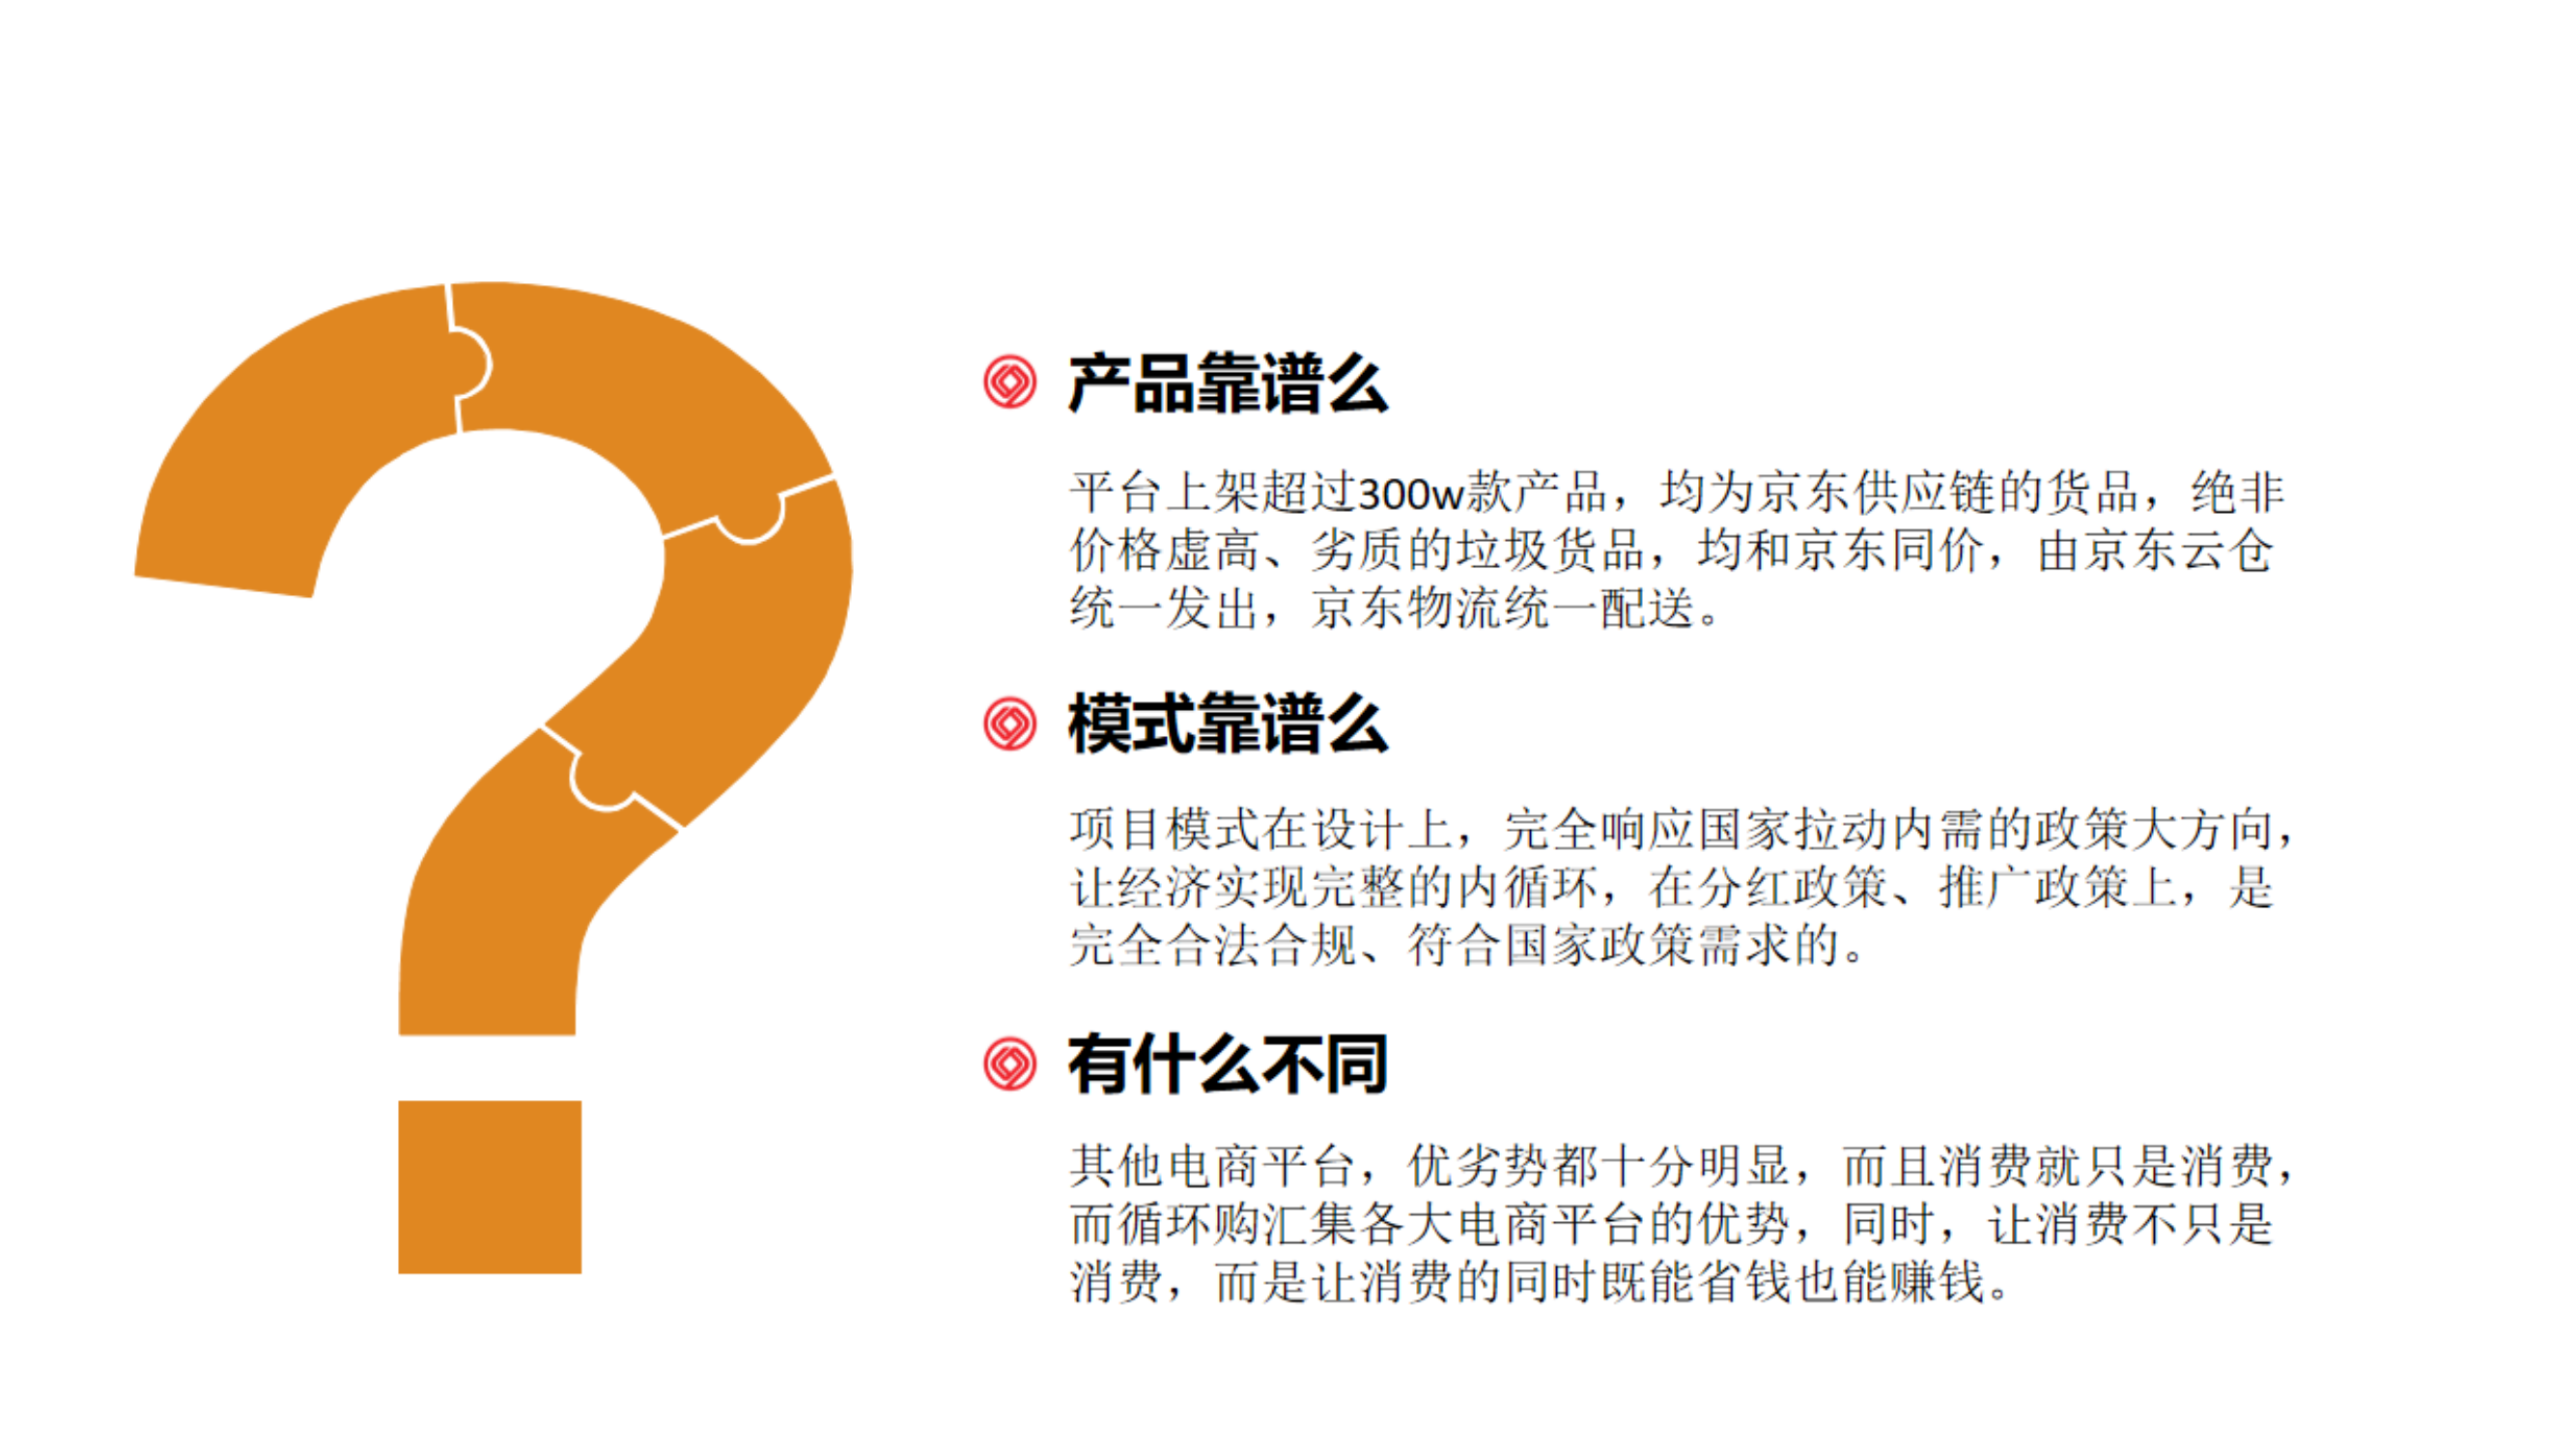 中国香港特别行政区小程序开发返利模式永春堂福利制度